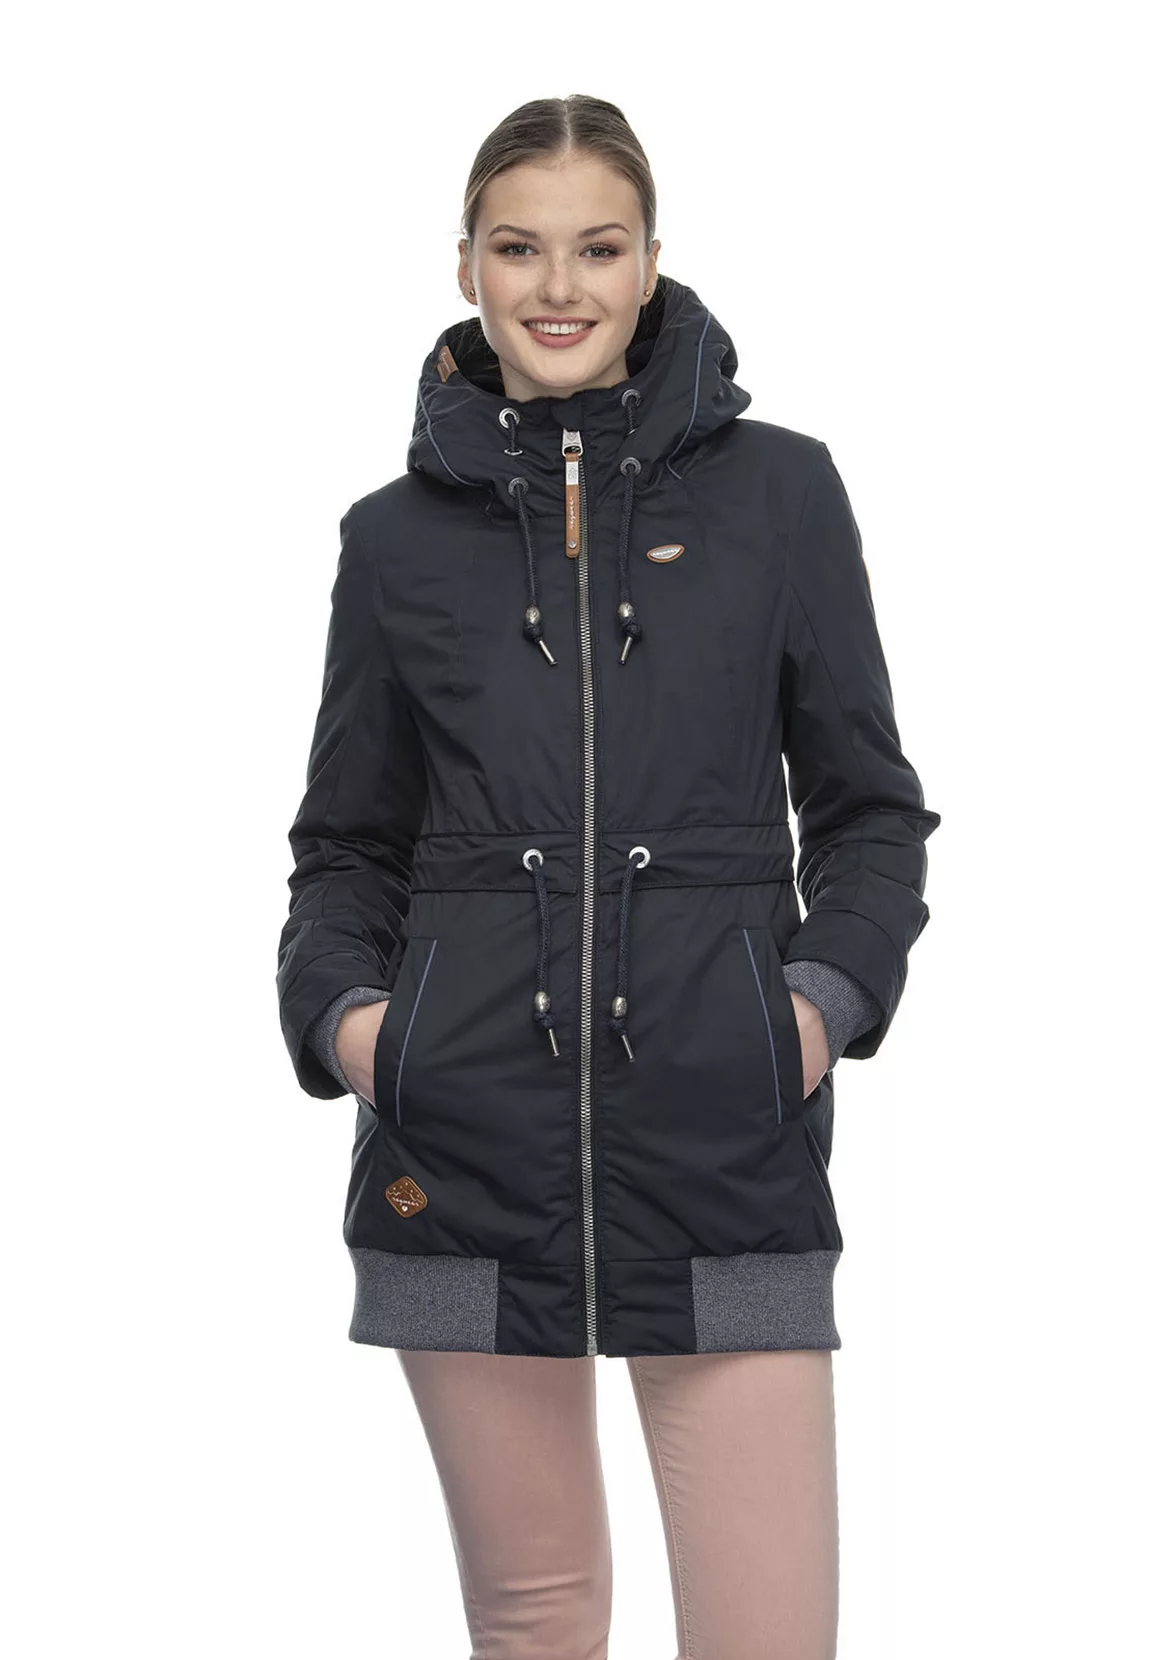 Ragwear Jacke Damen ZIRRCON 2021-60028 Blau Navy 2028 günstig online kaufen